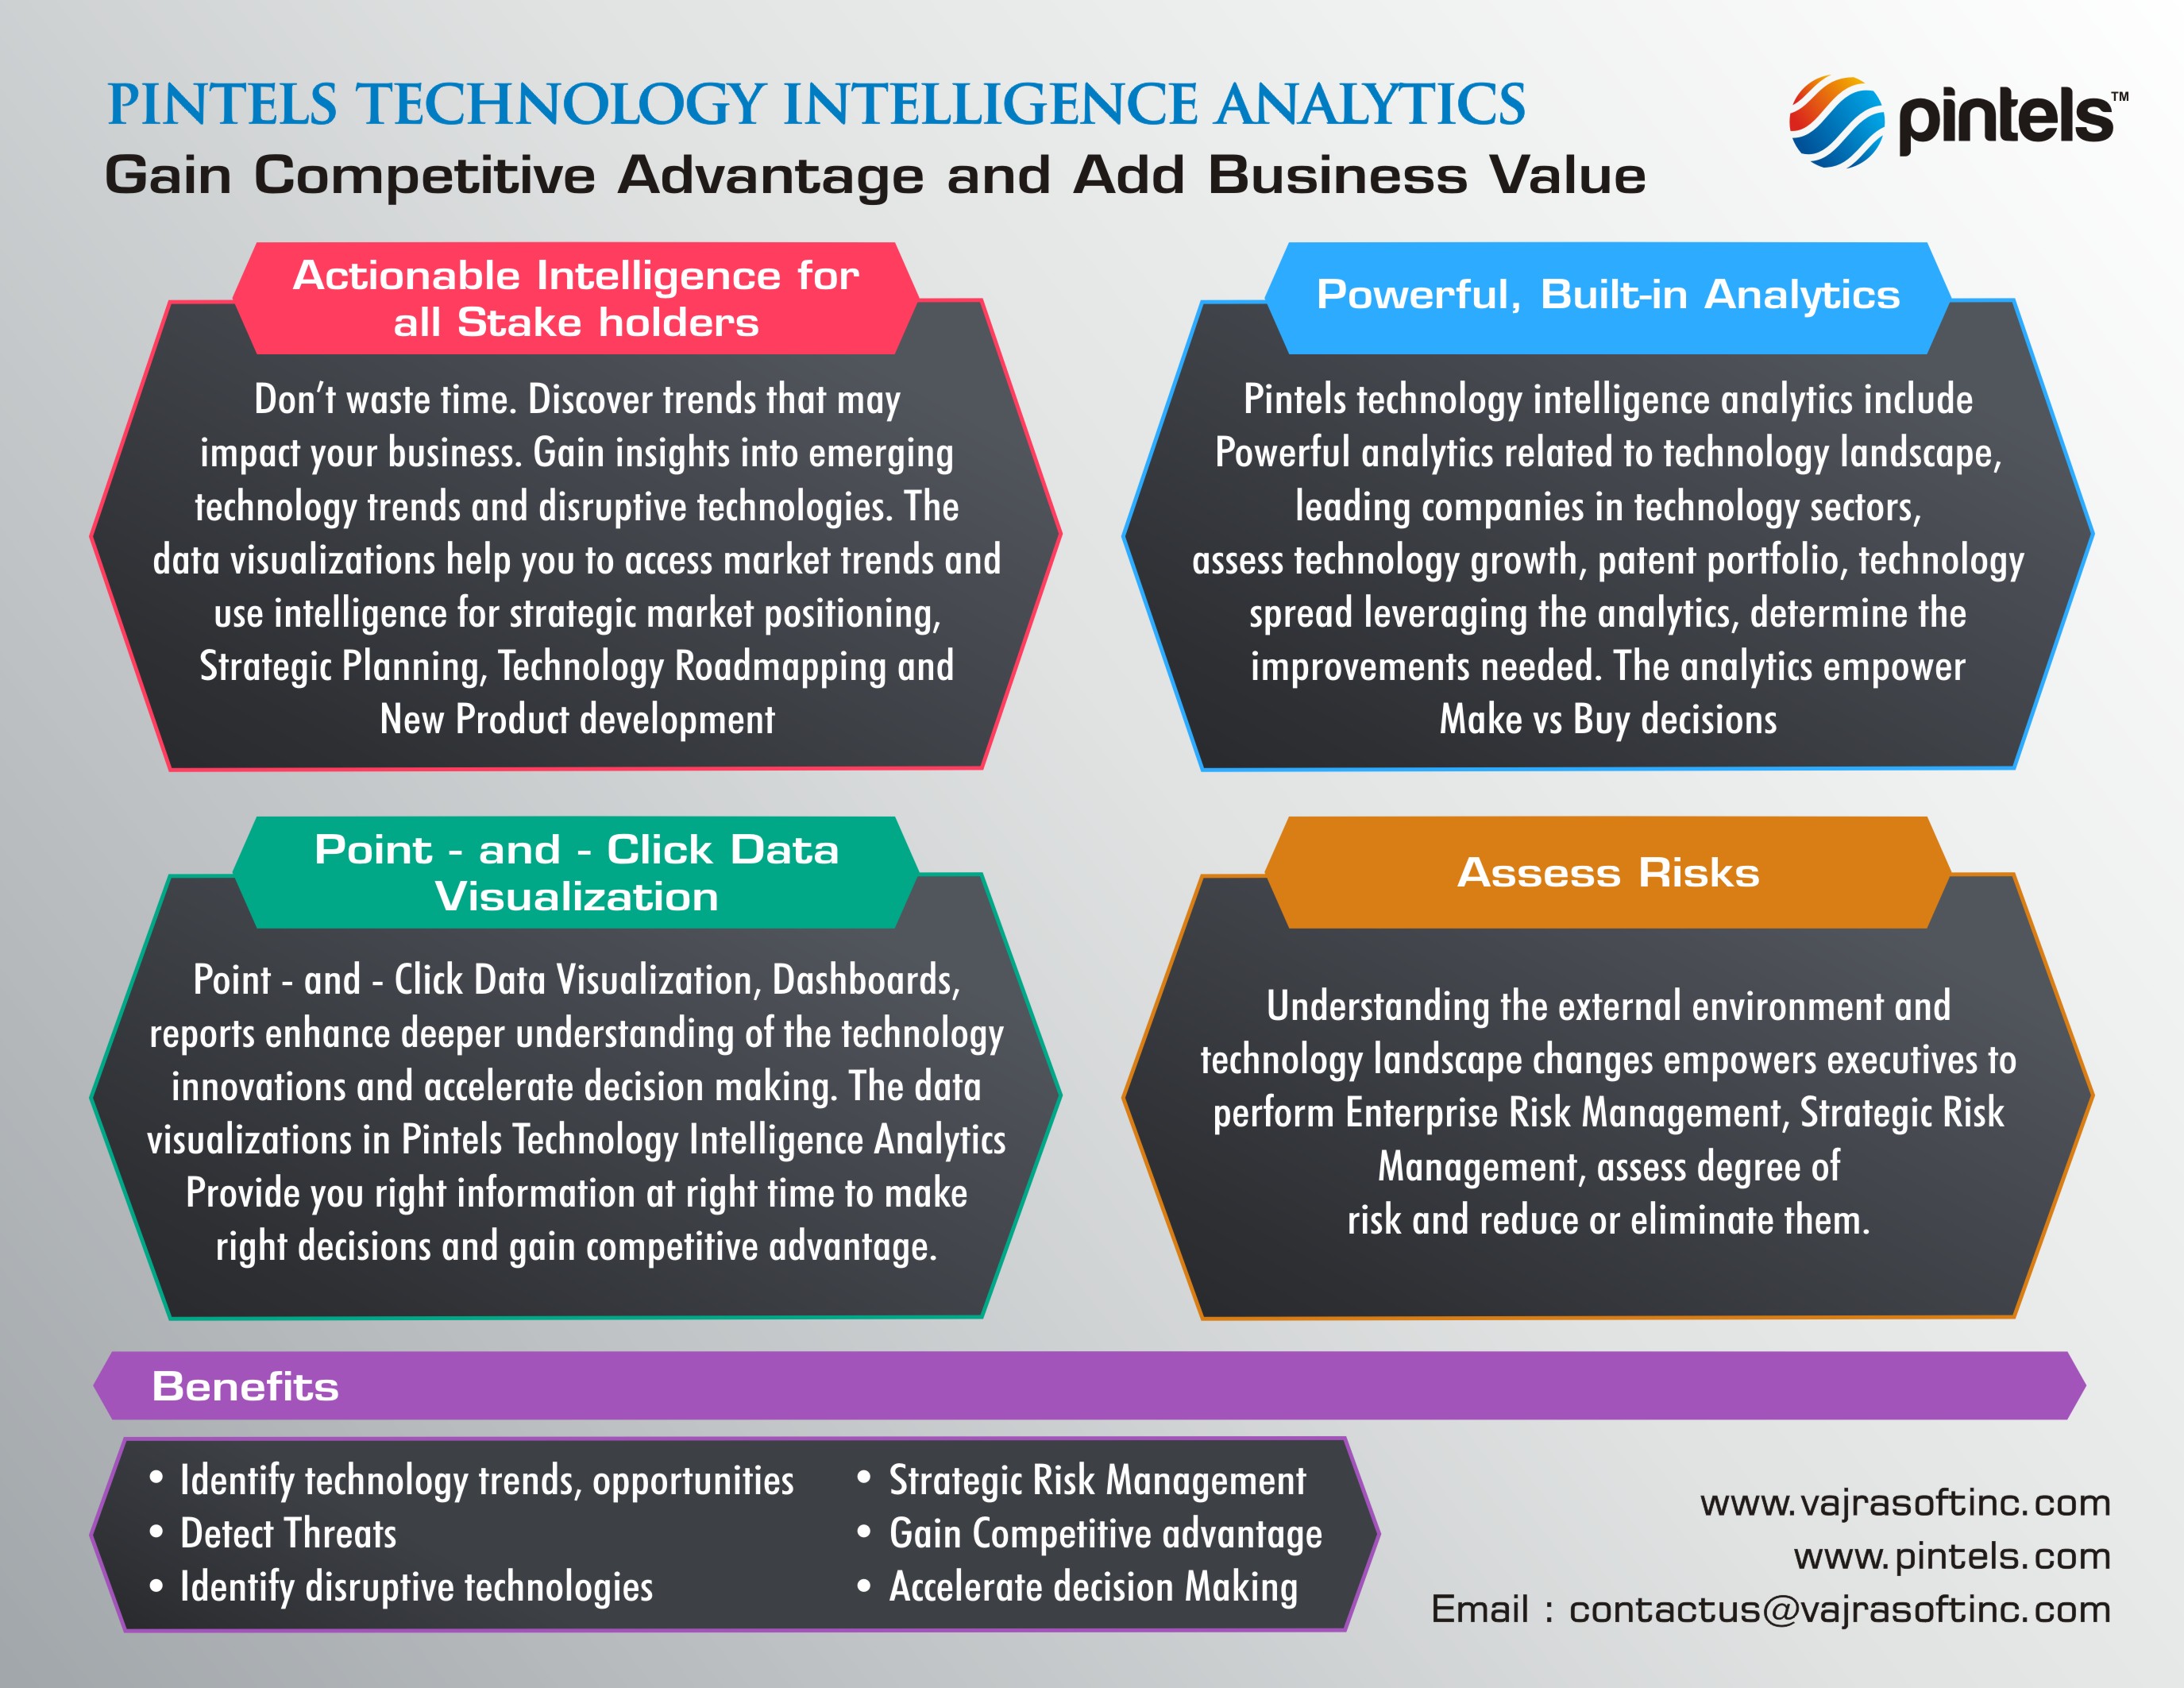 Pintels Technology Intelligence Analytics